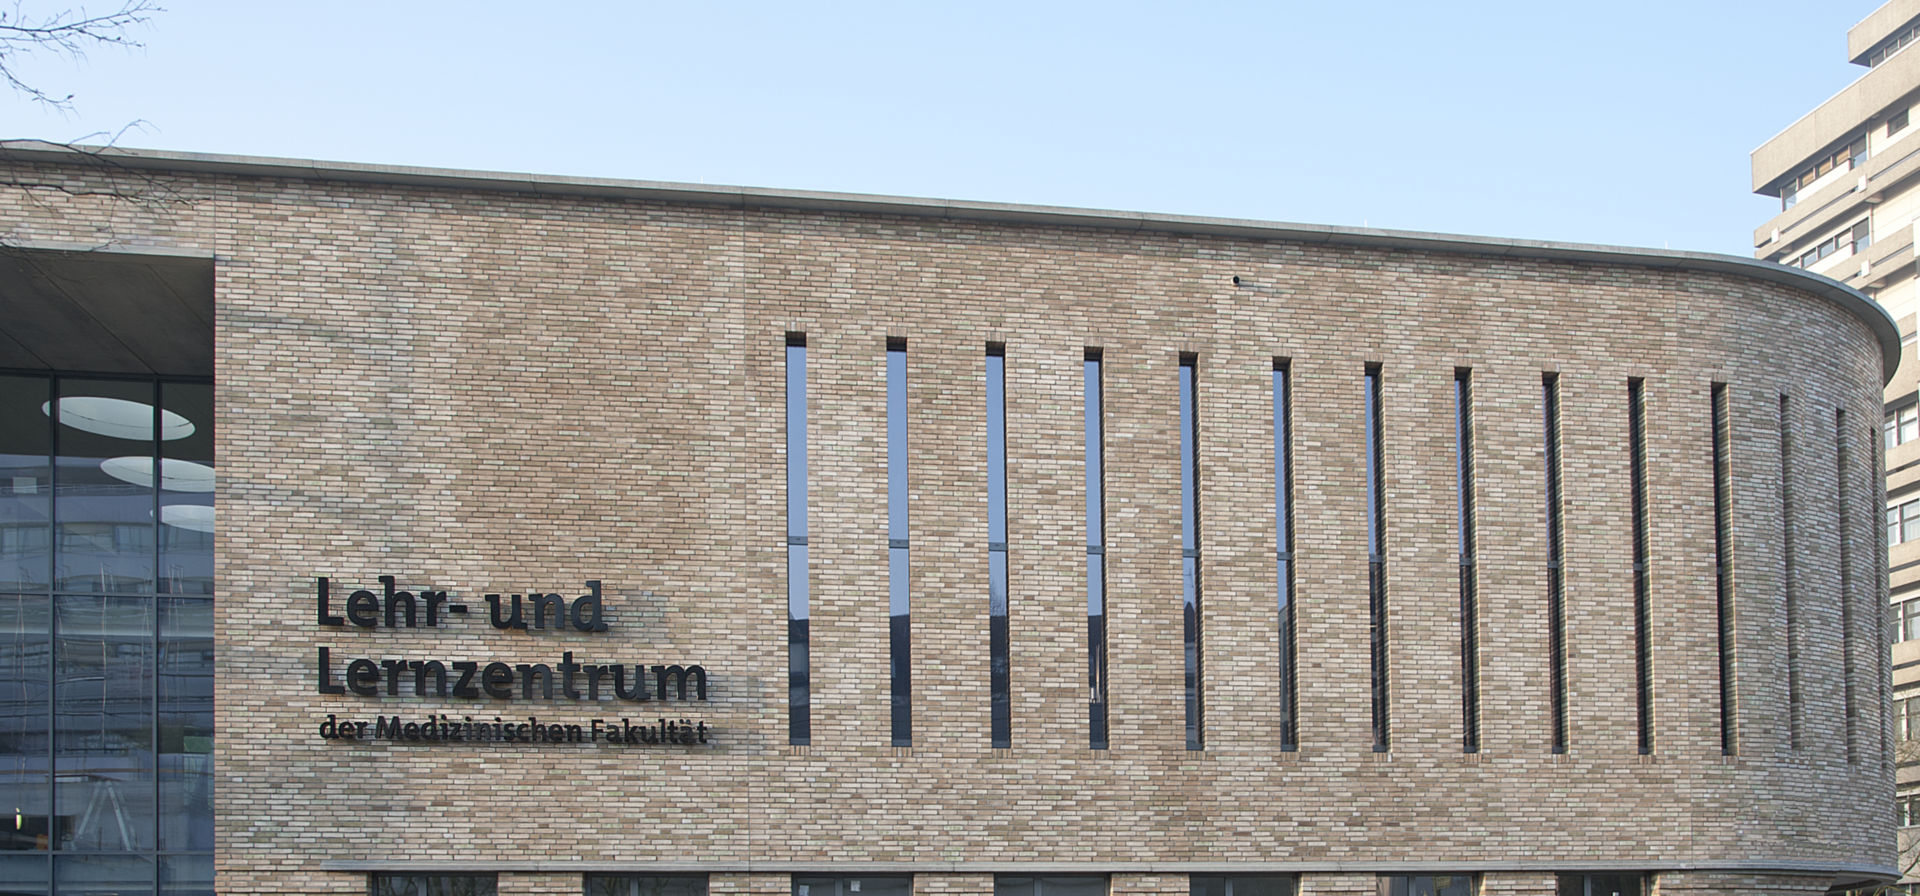 Das Lehr- und Lernzentrum der Medizinischen Fakultät der Universität Duisburg-Essen